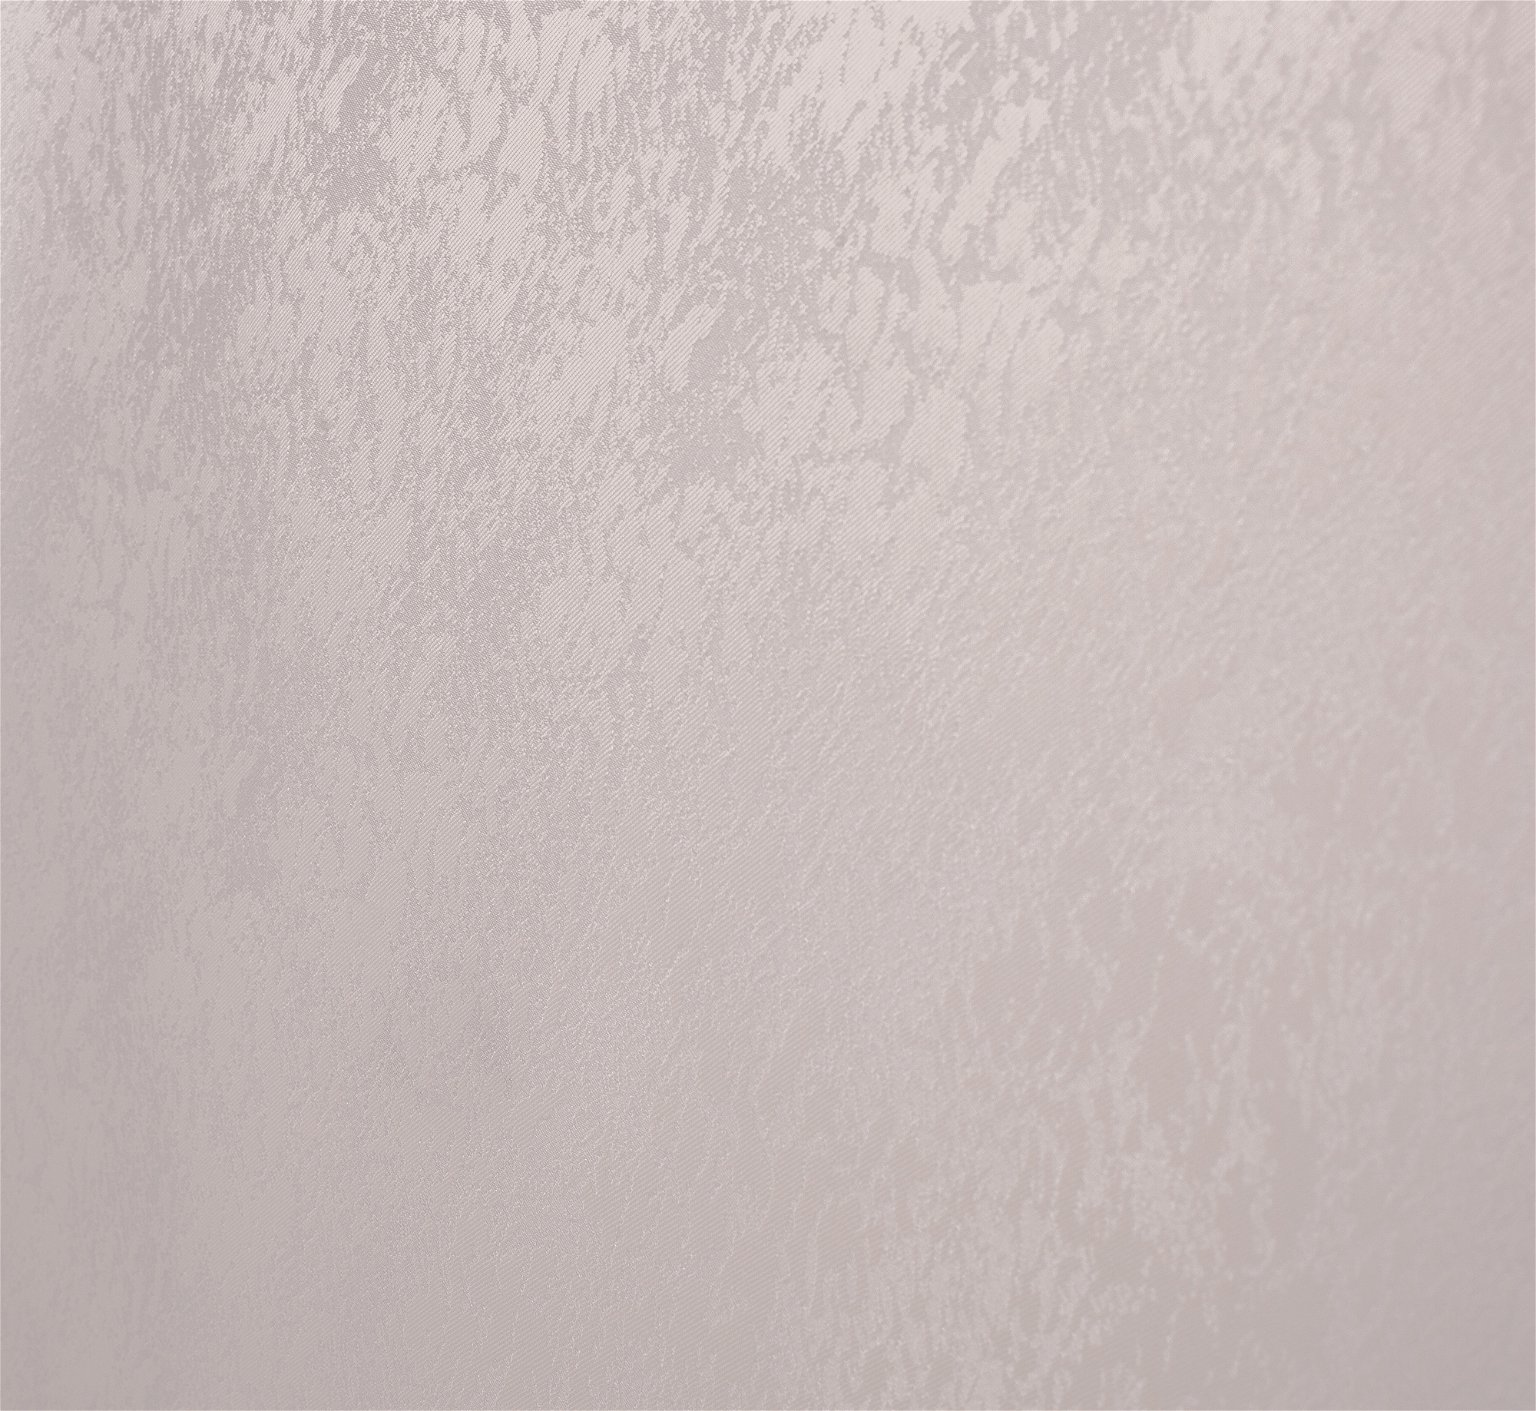 Klasikinė ritininė užuolaida LONDON, kreminės sp., 80 x 170 cm, 100 % poliesteris - 2